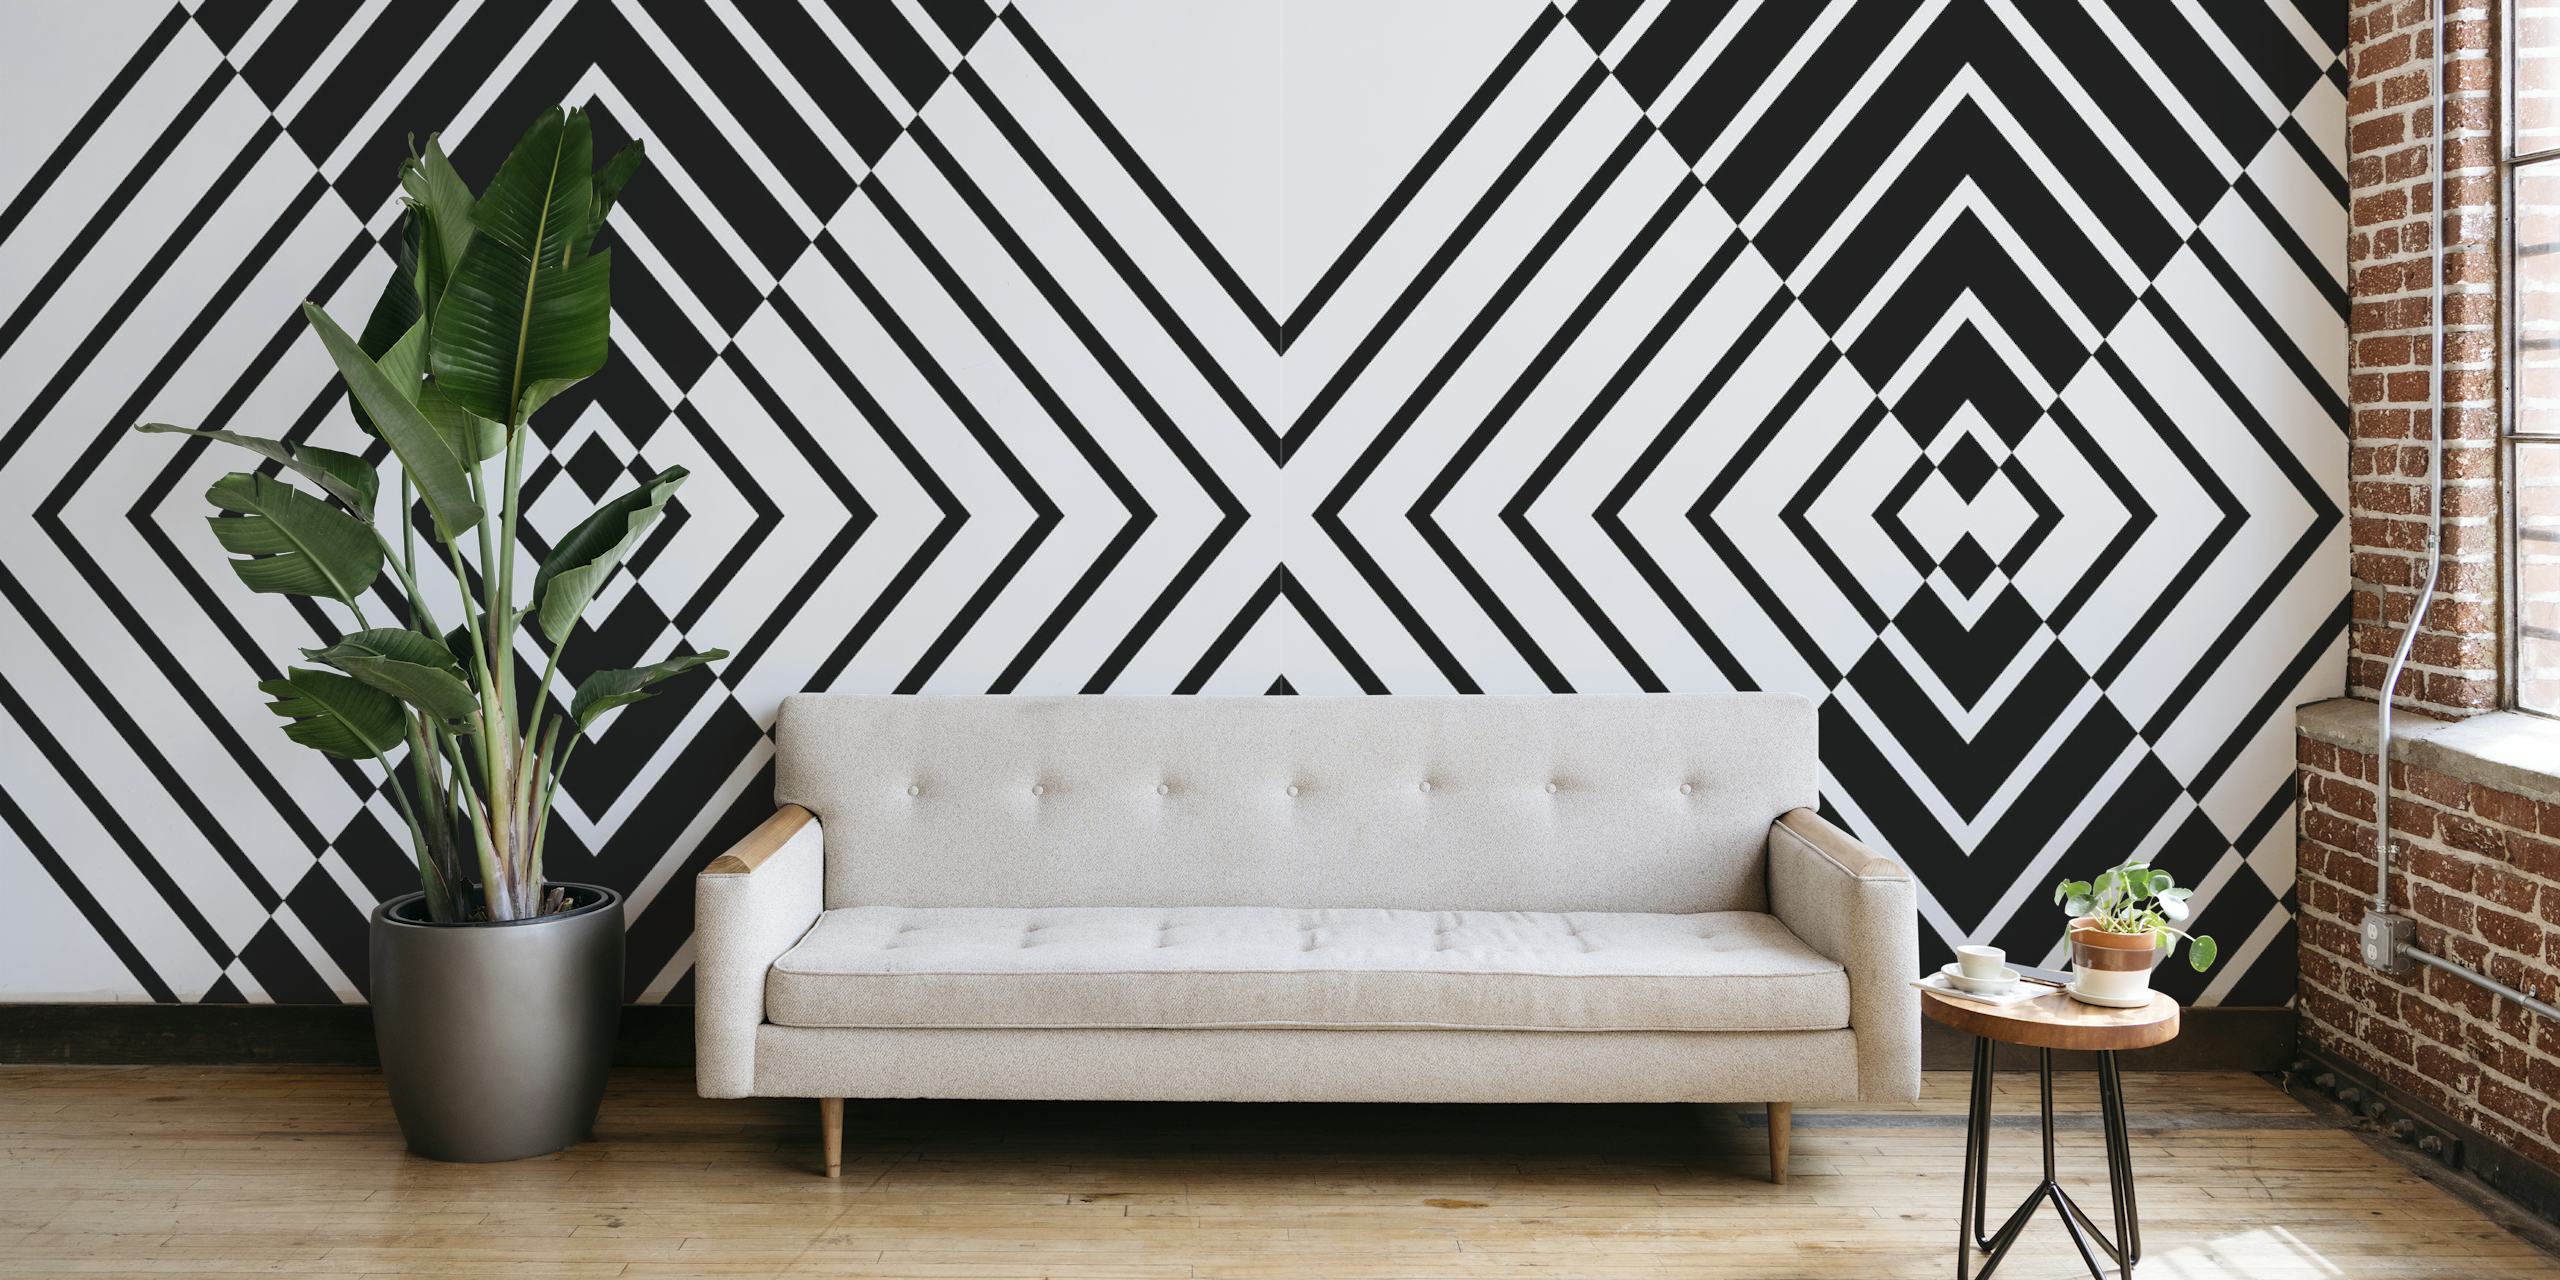 Sort-hvidt vægmaleri med geometrisk mønster skaber et dristigt abstrakt design